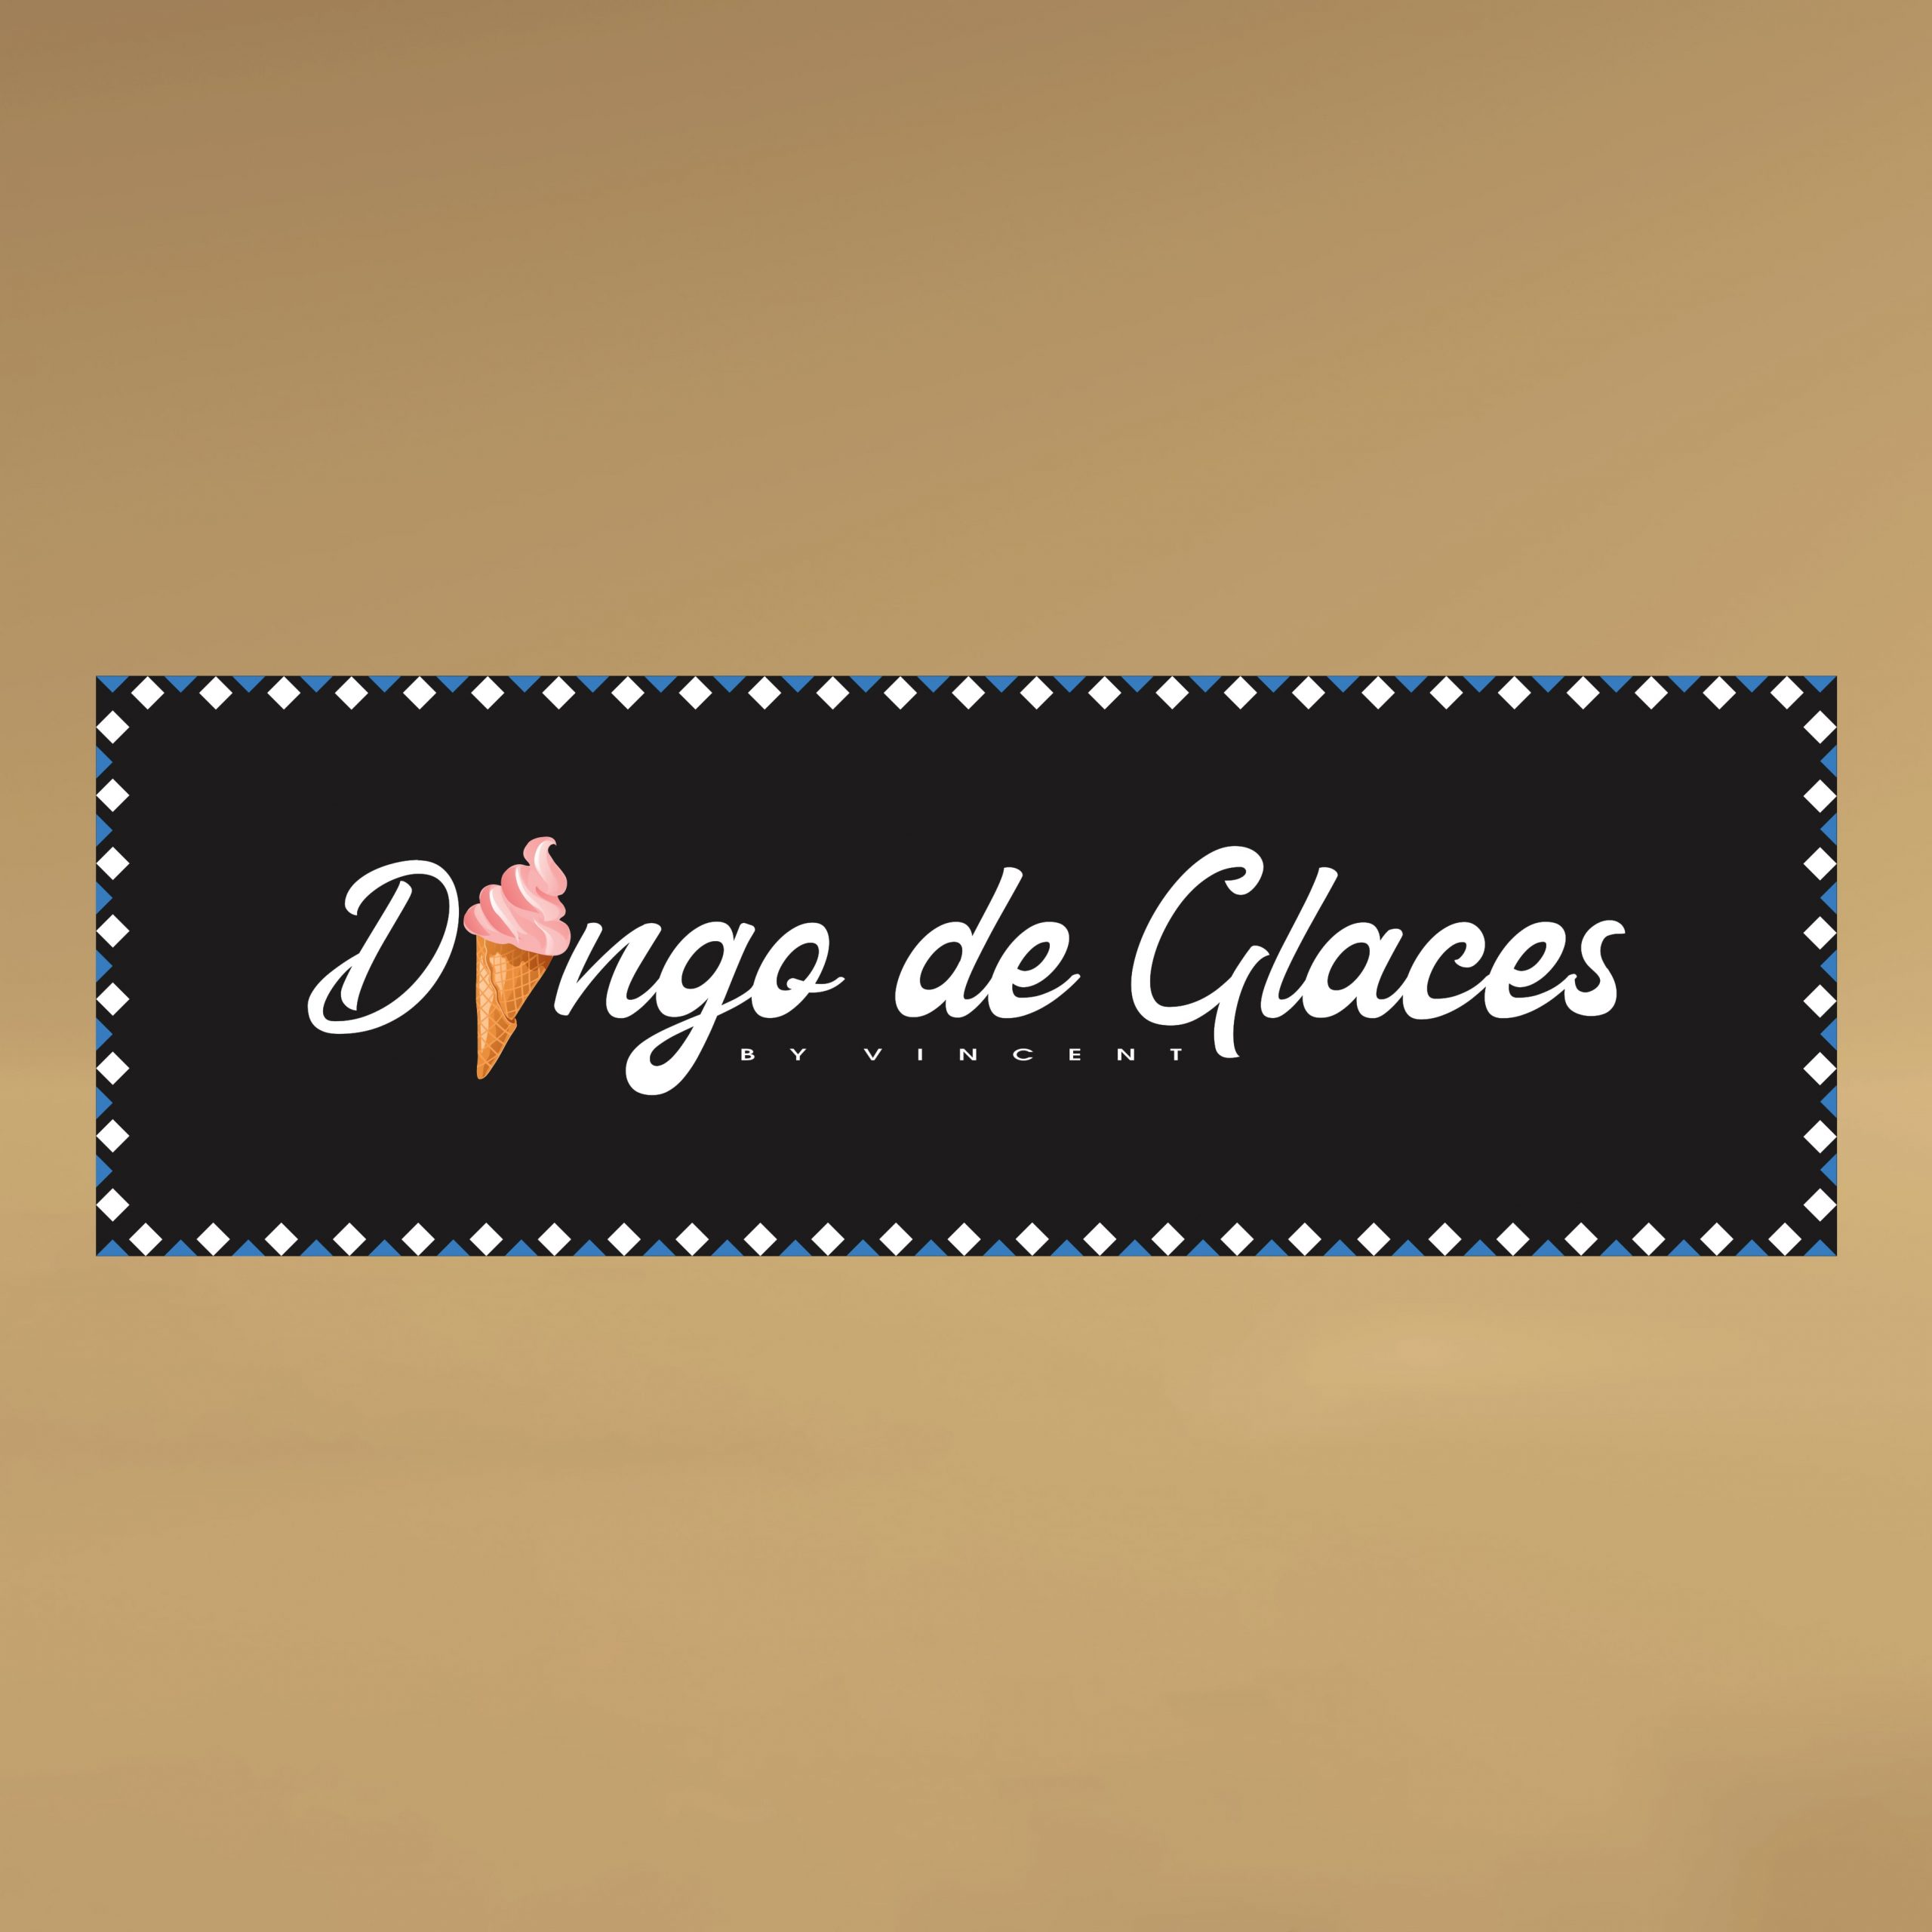 Panneau publicitaire pour dingo des glaces par Emmanuel UGO Agence de communication